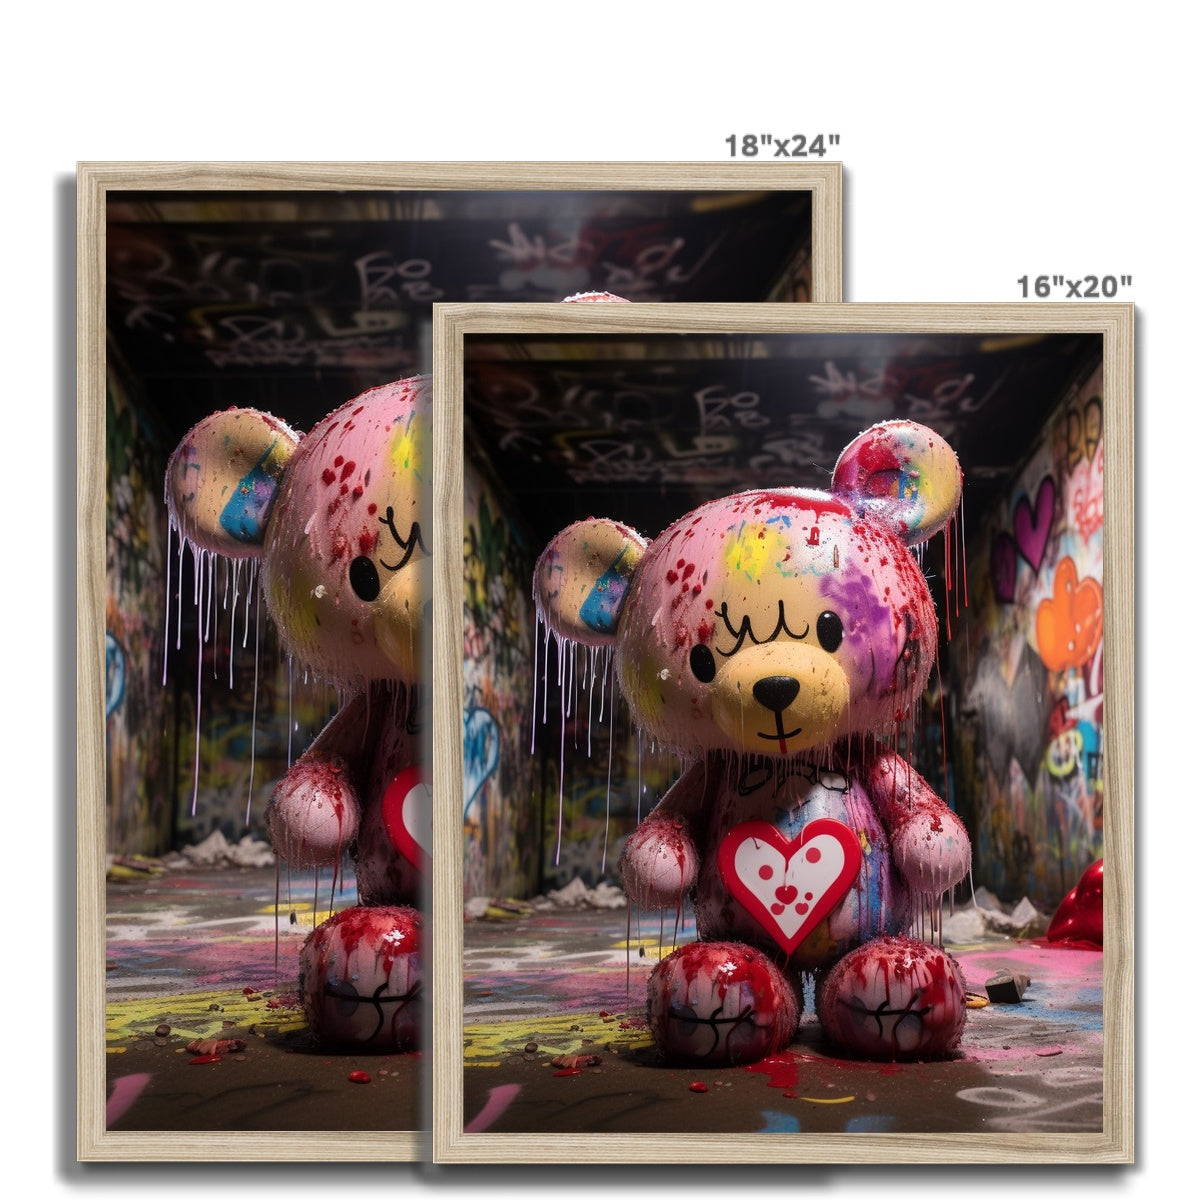 Teddy Got Drip: Limited Edition Framed Print